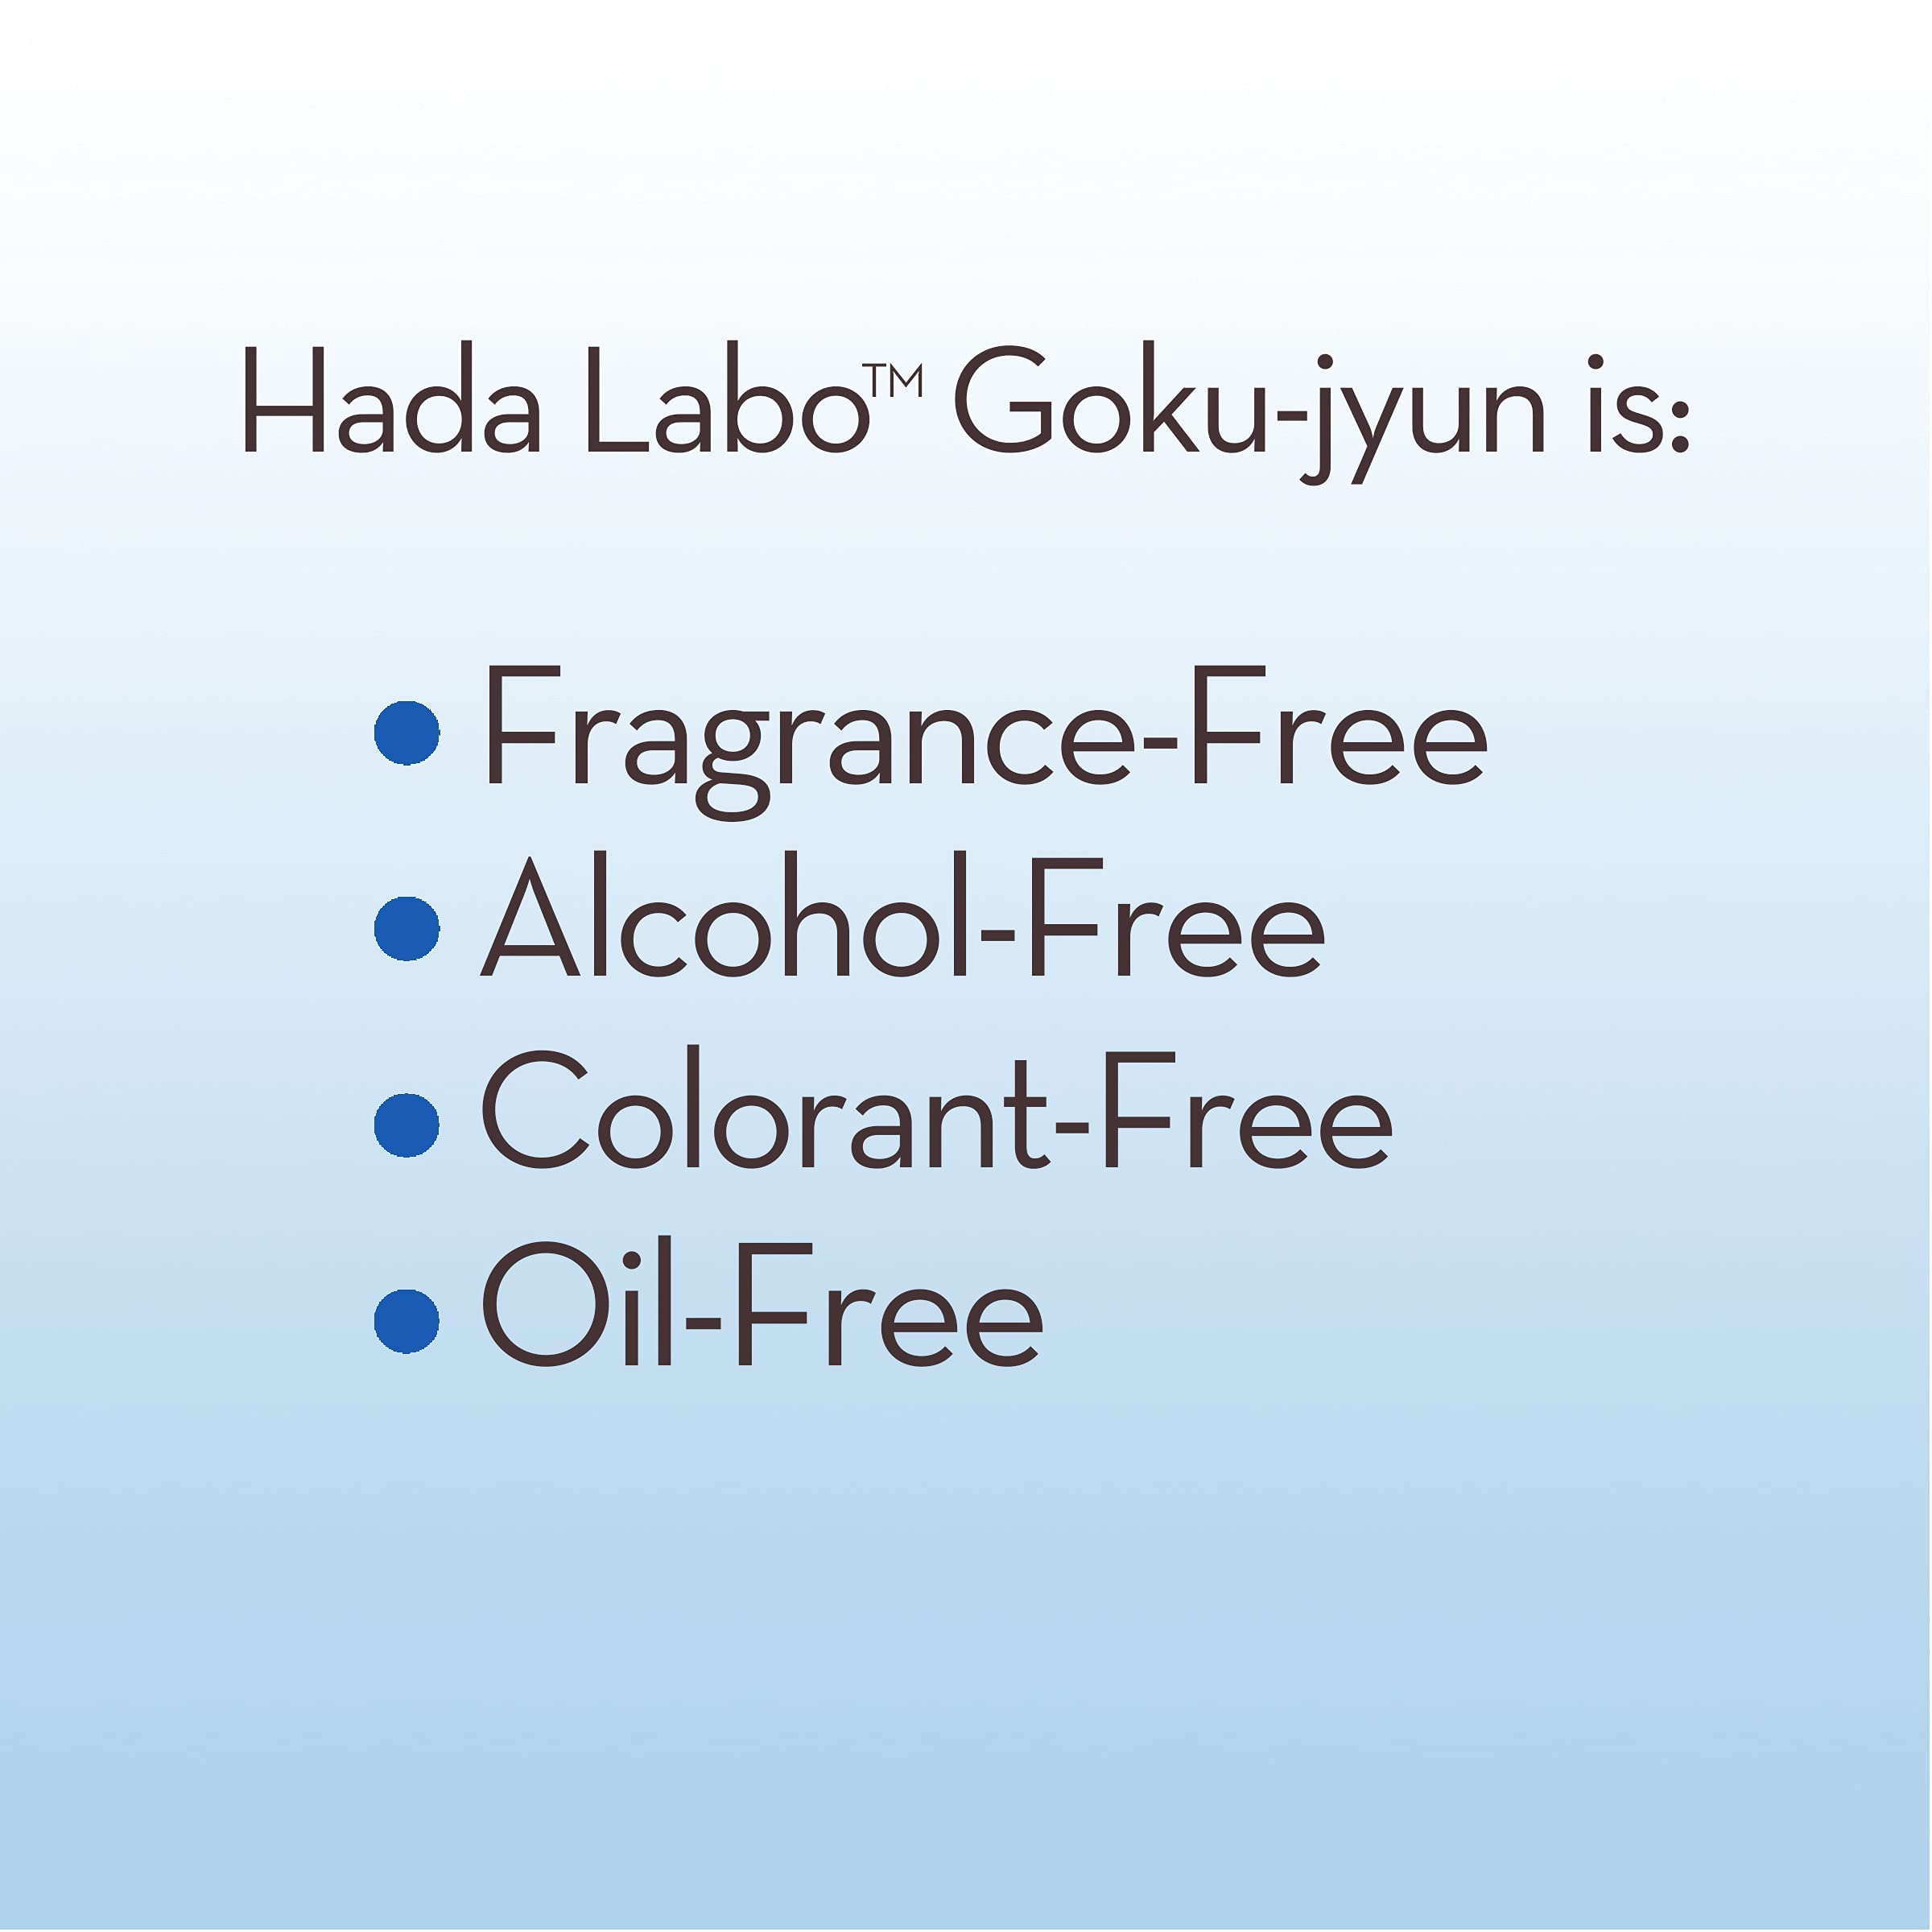 HADA LABO Goku-jyun Foaming Face Wash - 5.4 fl oz (160 mL) Bottle